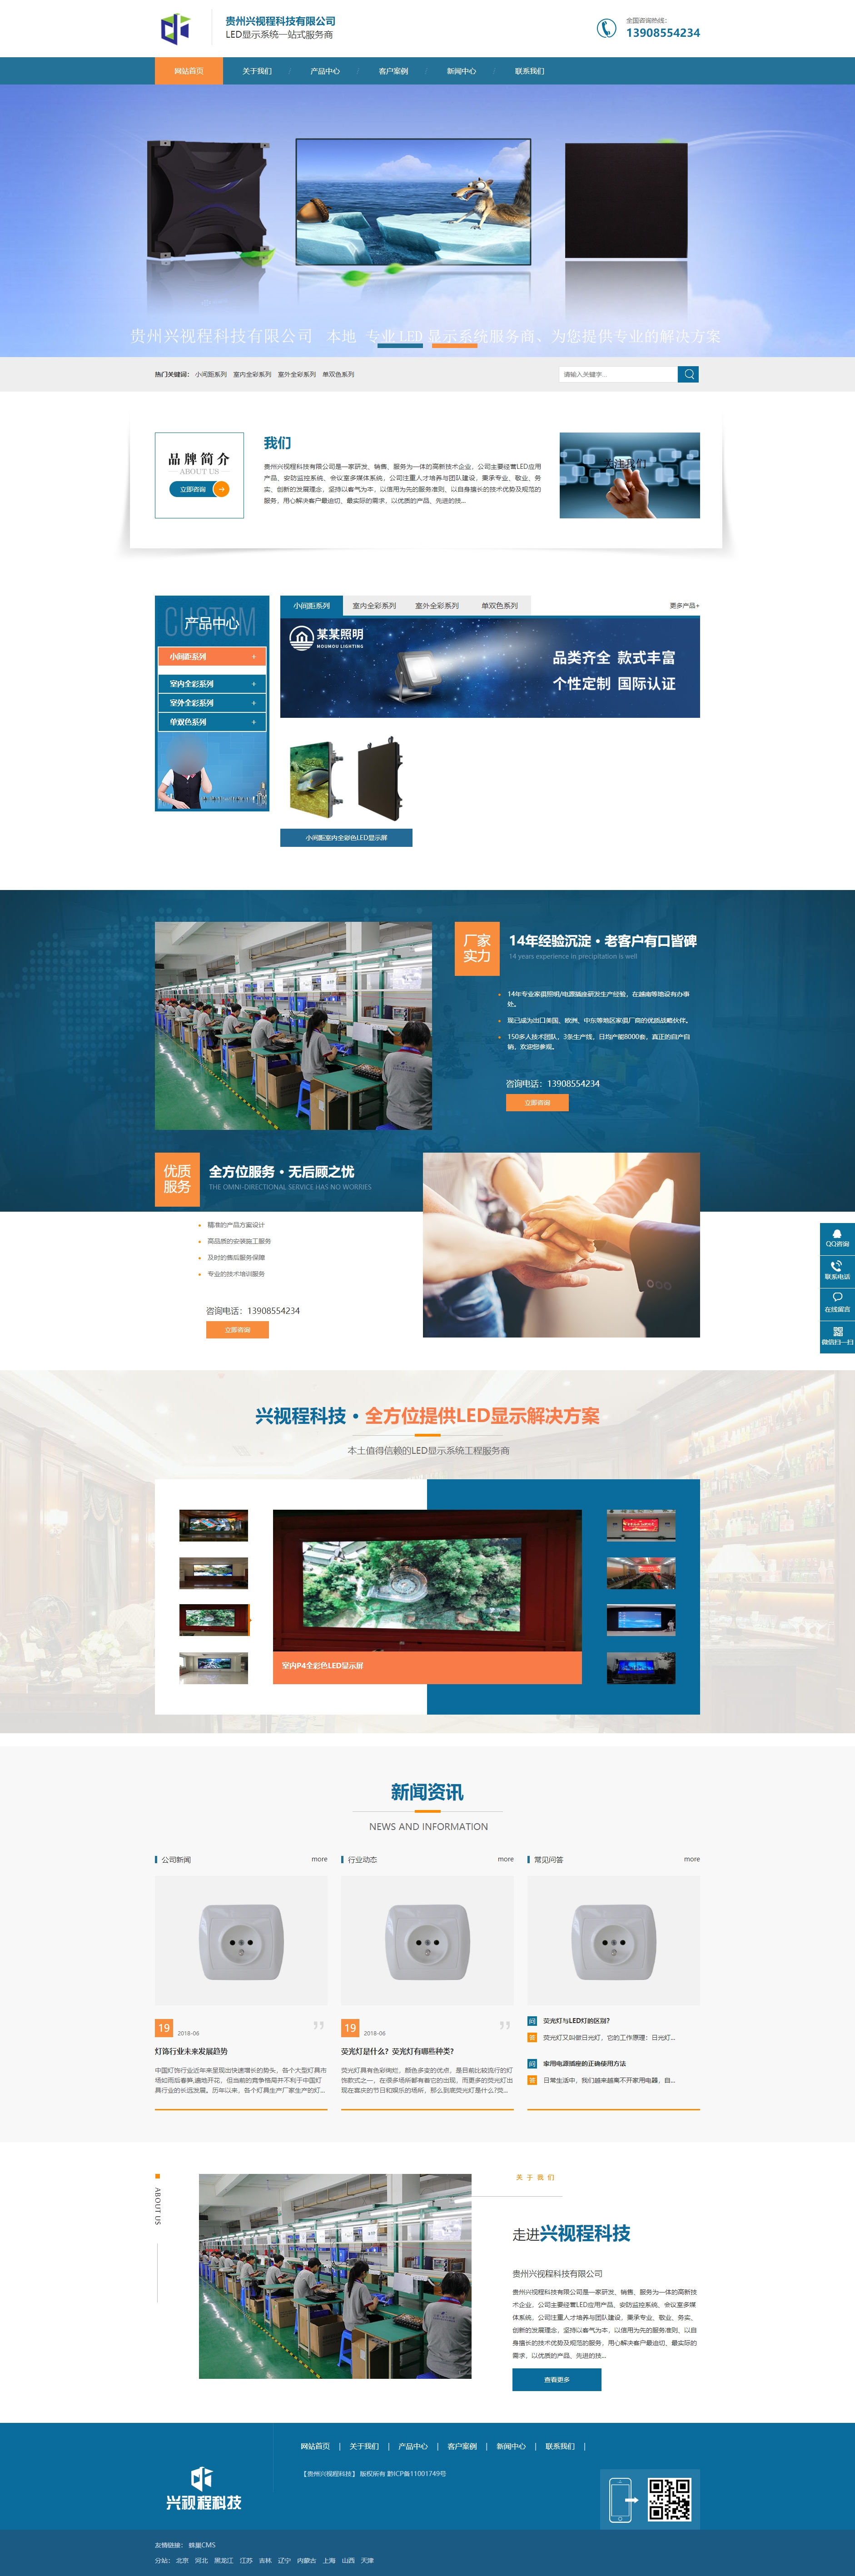 丹寨贵州兴视程科技有限公司 网站正式上线